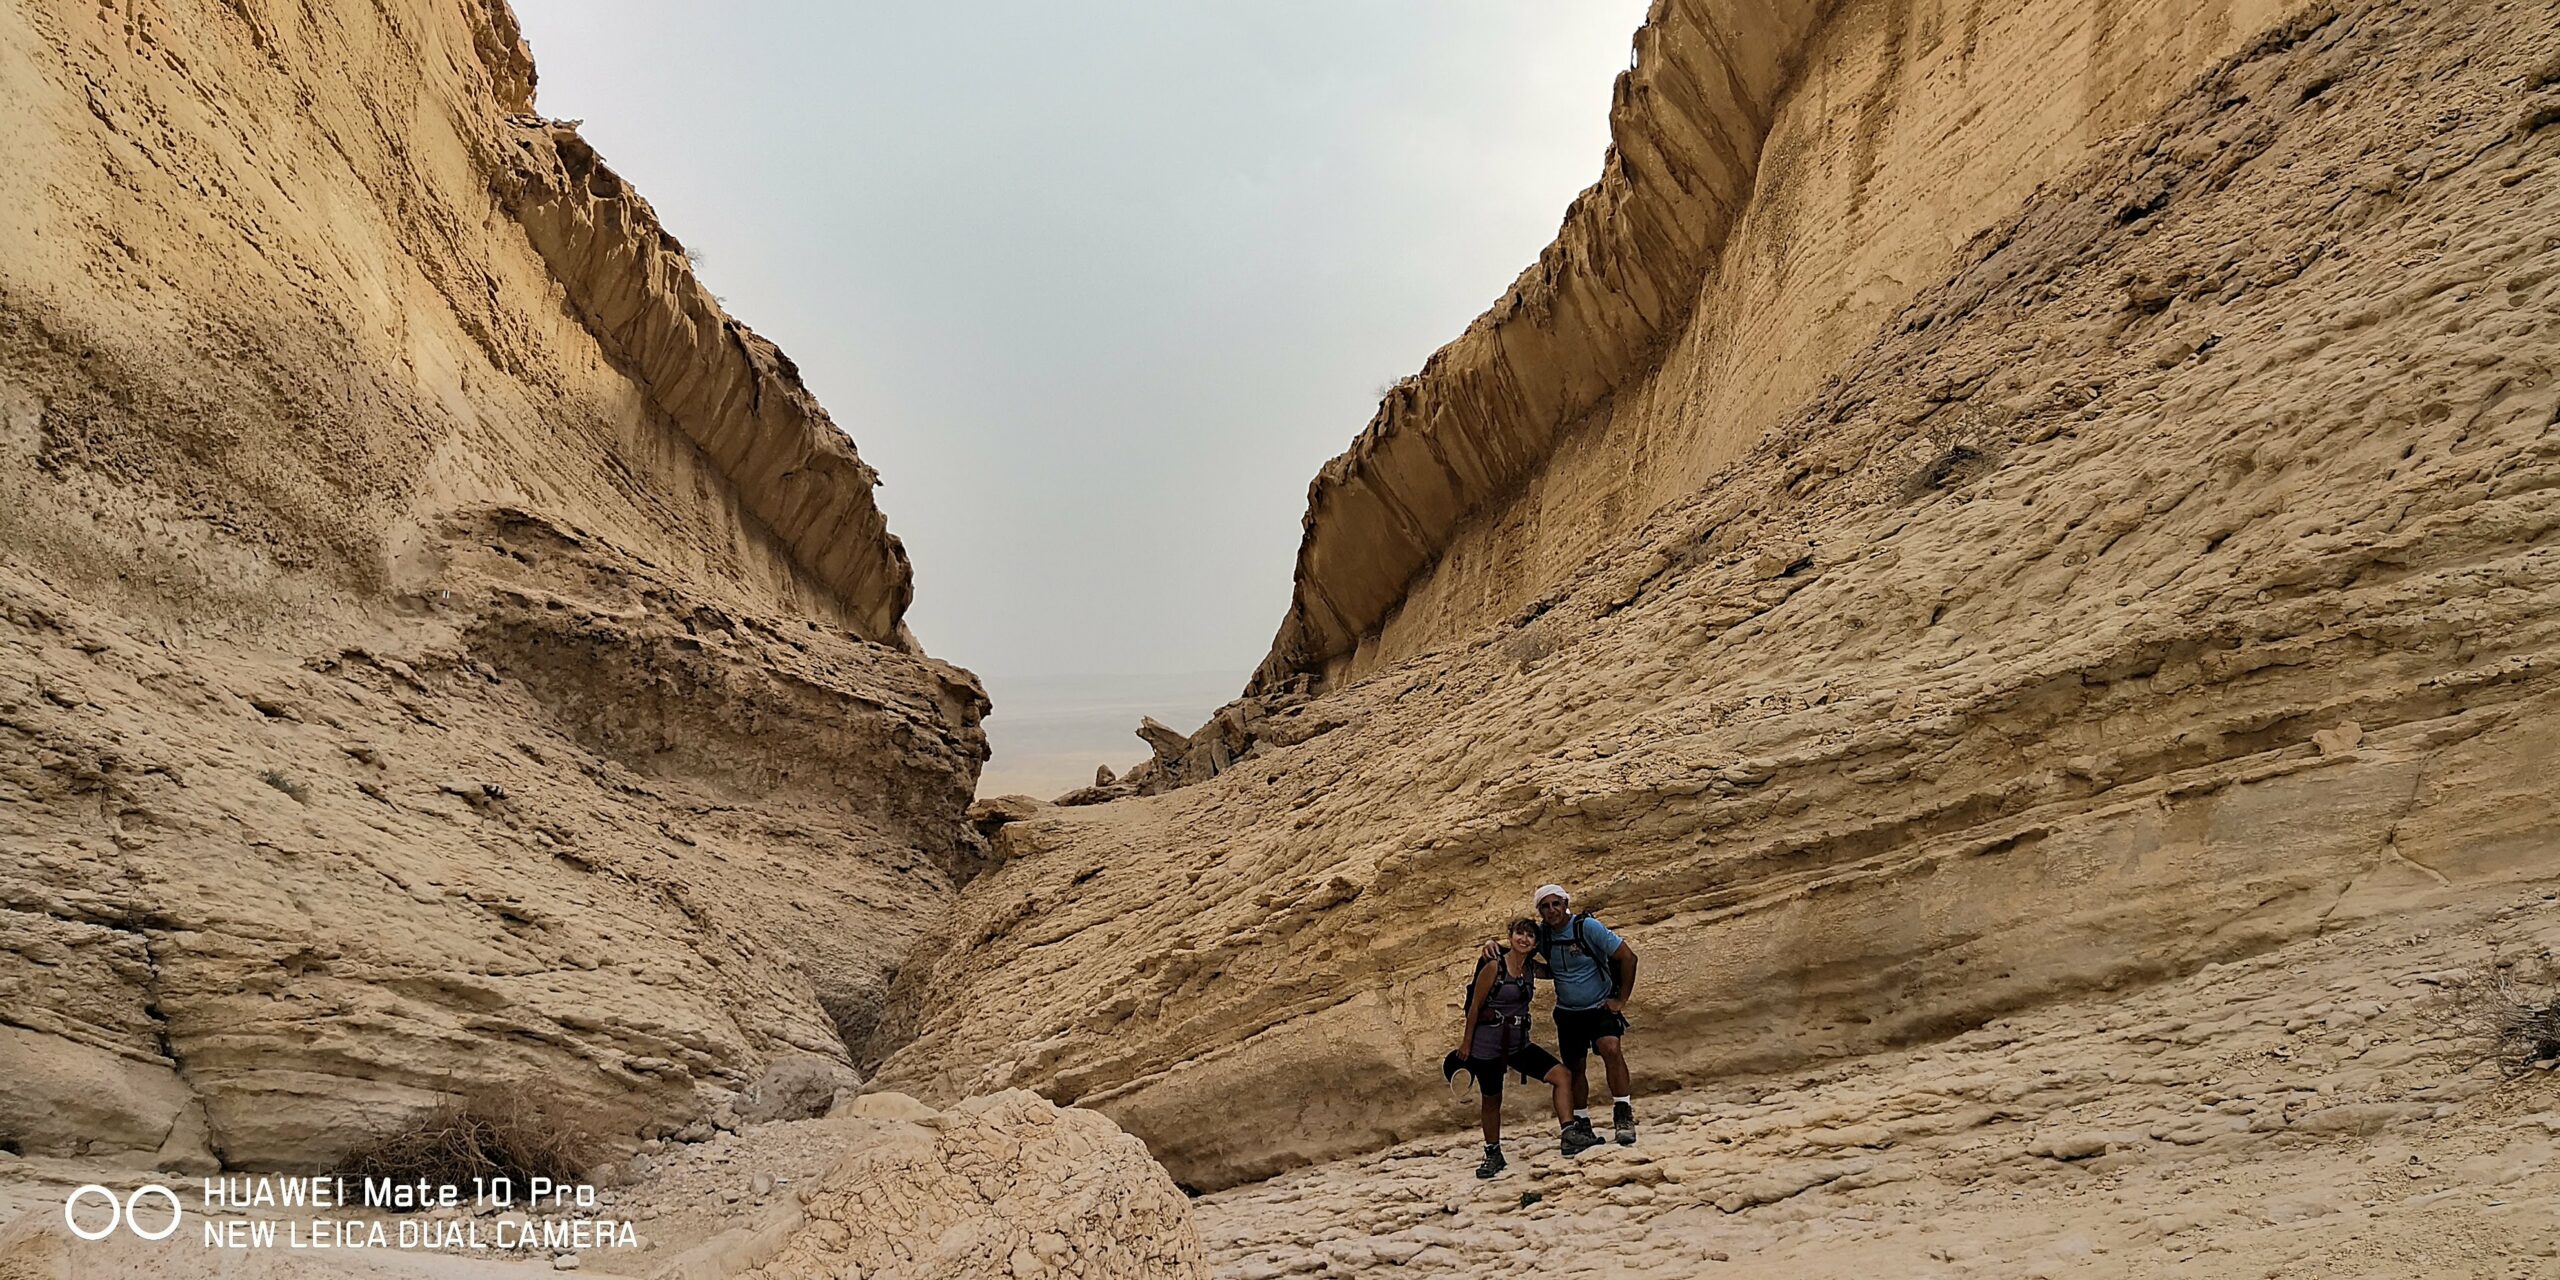 טיול אתגרי במדבר במסלולים מרהיבים במכתש נחל מזר ונחל גוב